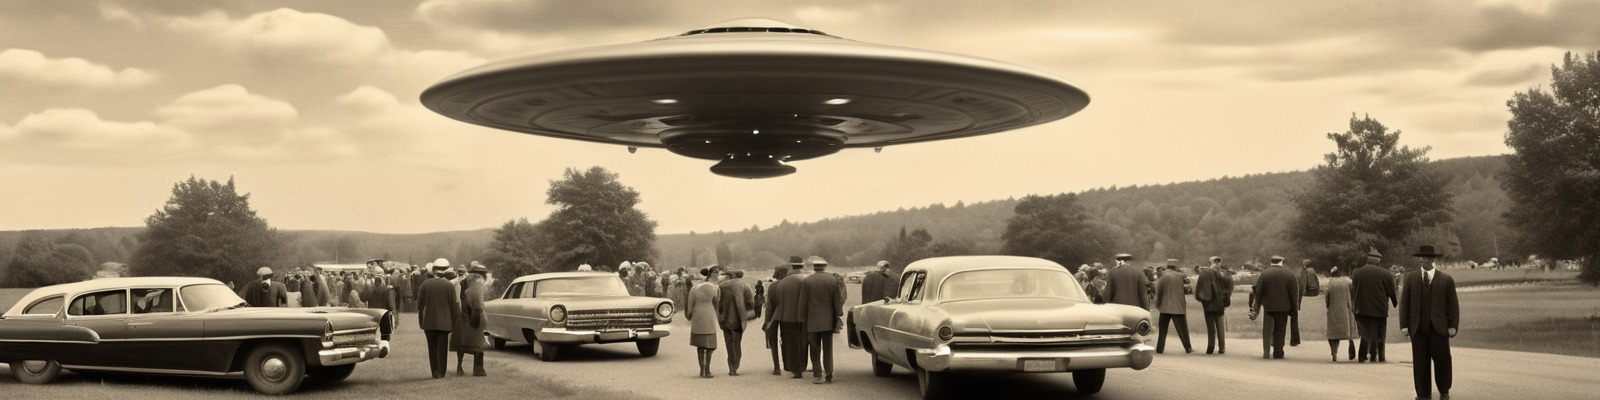 секретное фото прибытия инопланетян в 1952 году